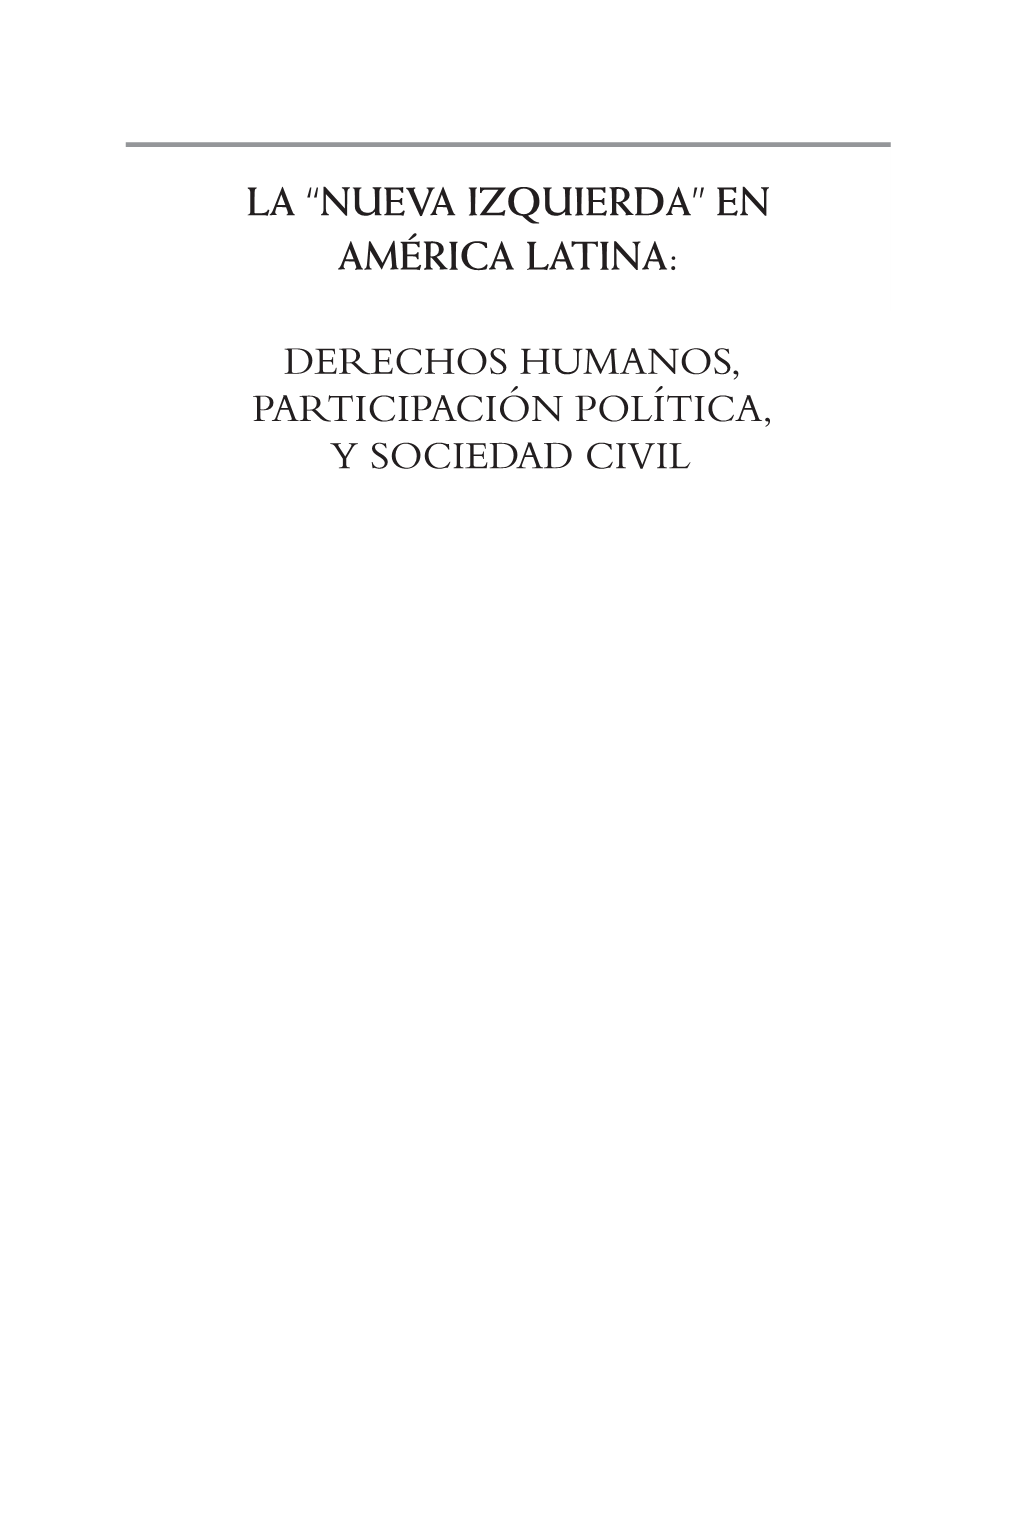 DERECHOS HUMANOS, PARTICIPACIÓN POLÍTICA, Y SOCIEDAD CIVIL Latin American Program